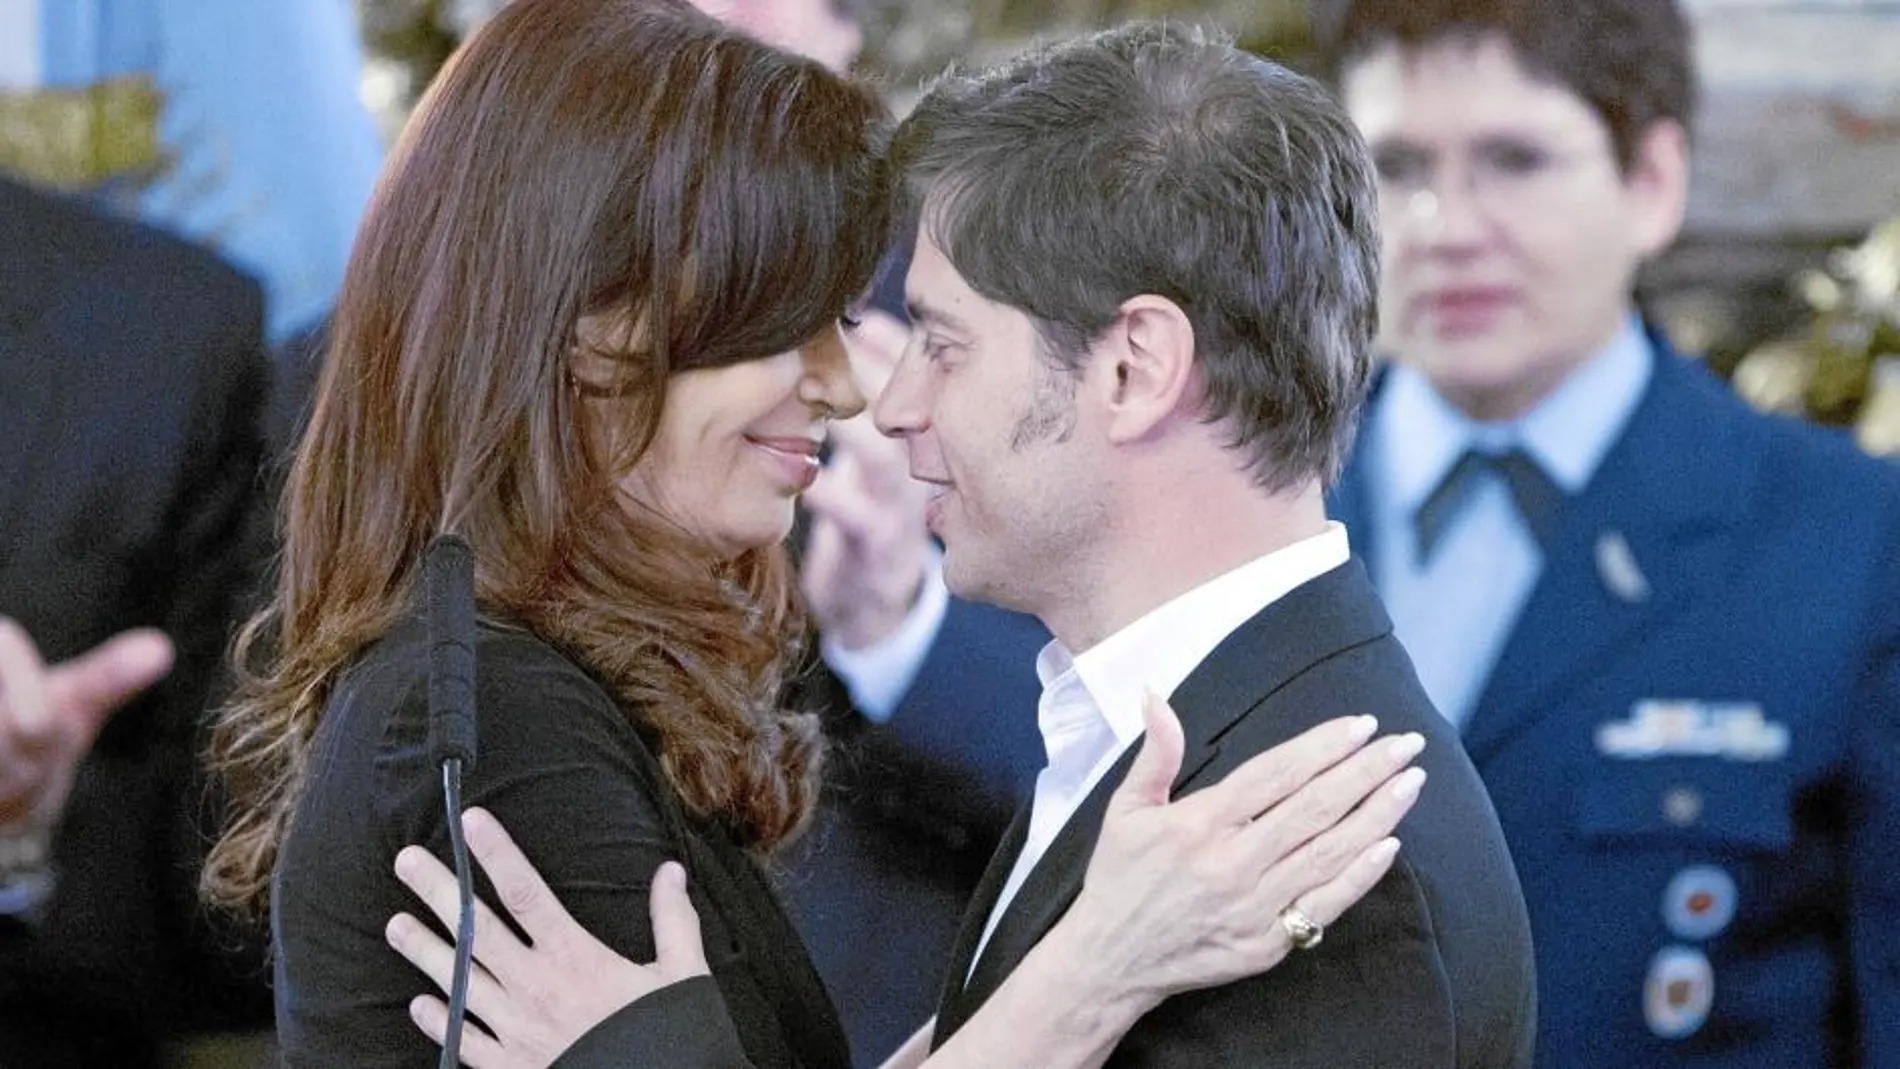 La presidenta argentina Cristina Fdez. de Kirchner abraza a Axel Kicillof en su investidura como ministro de Economía